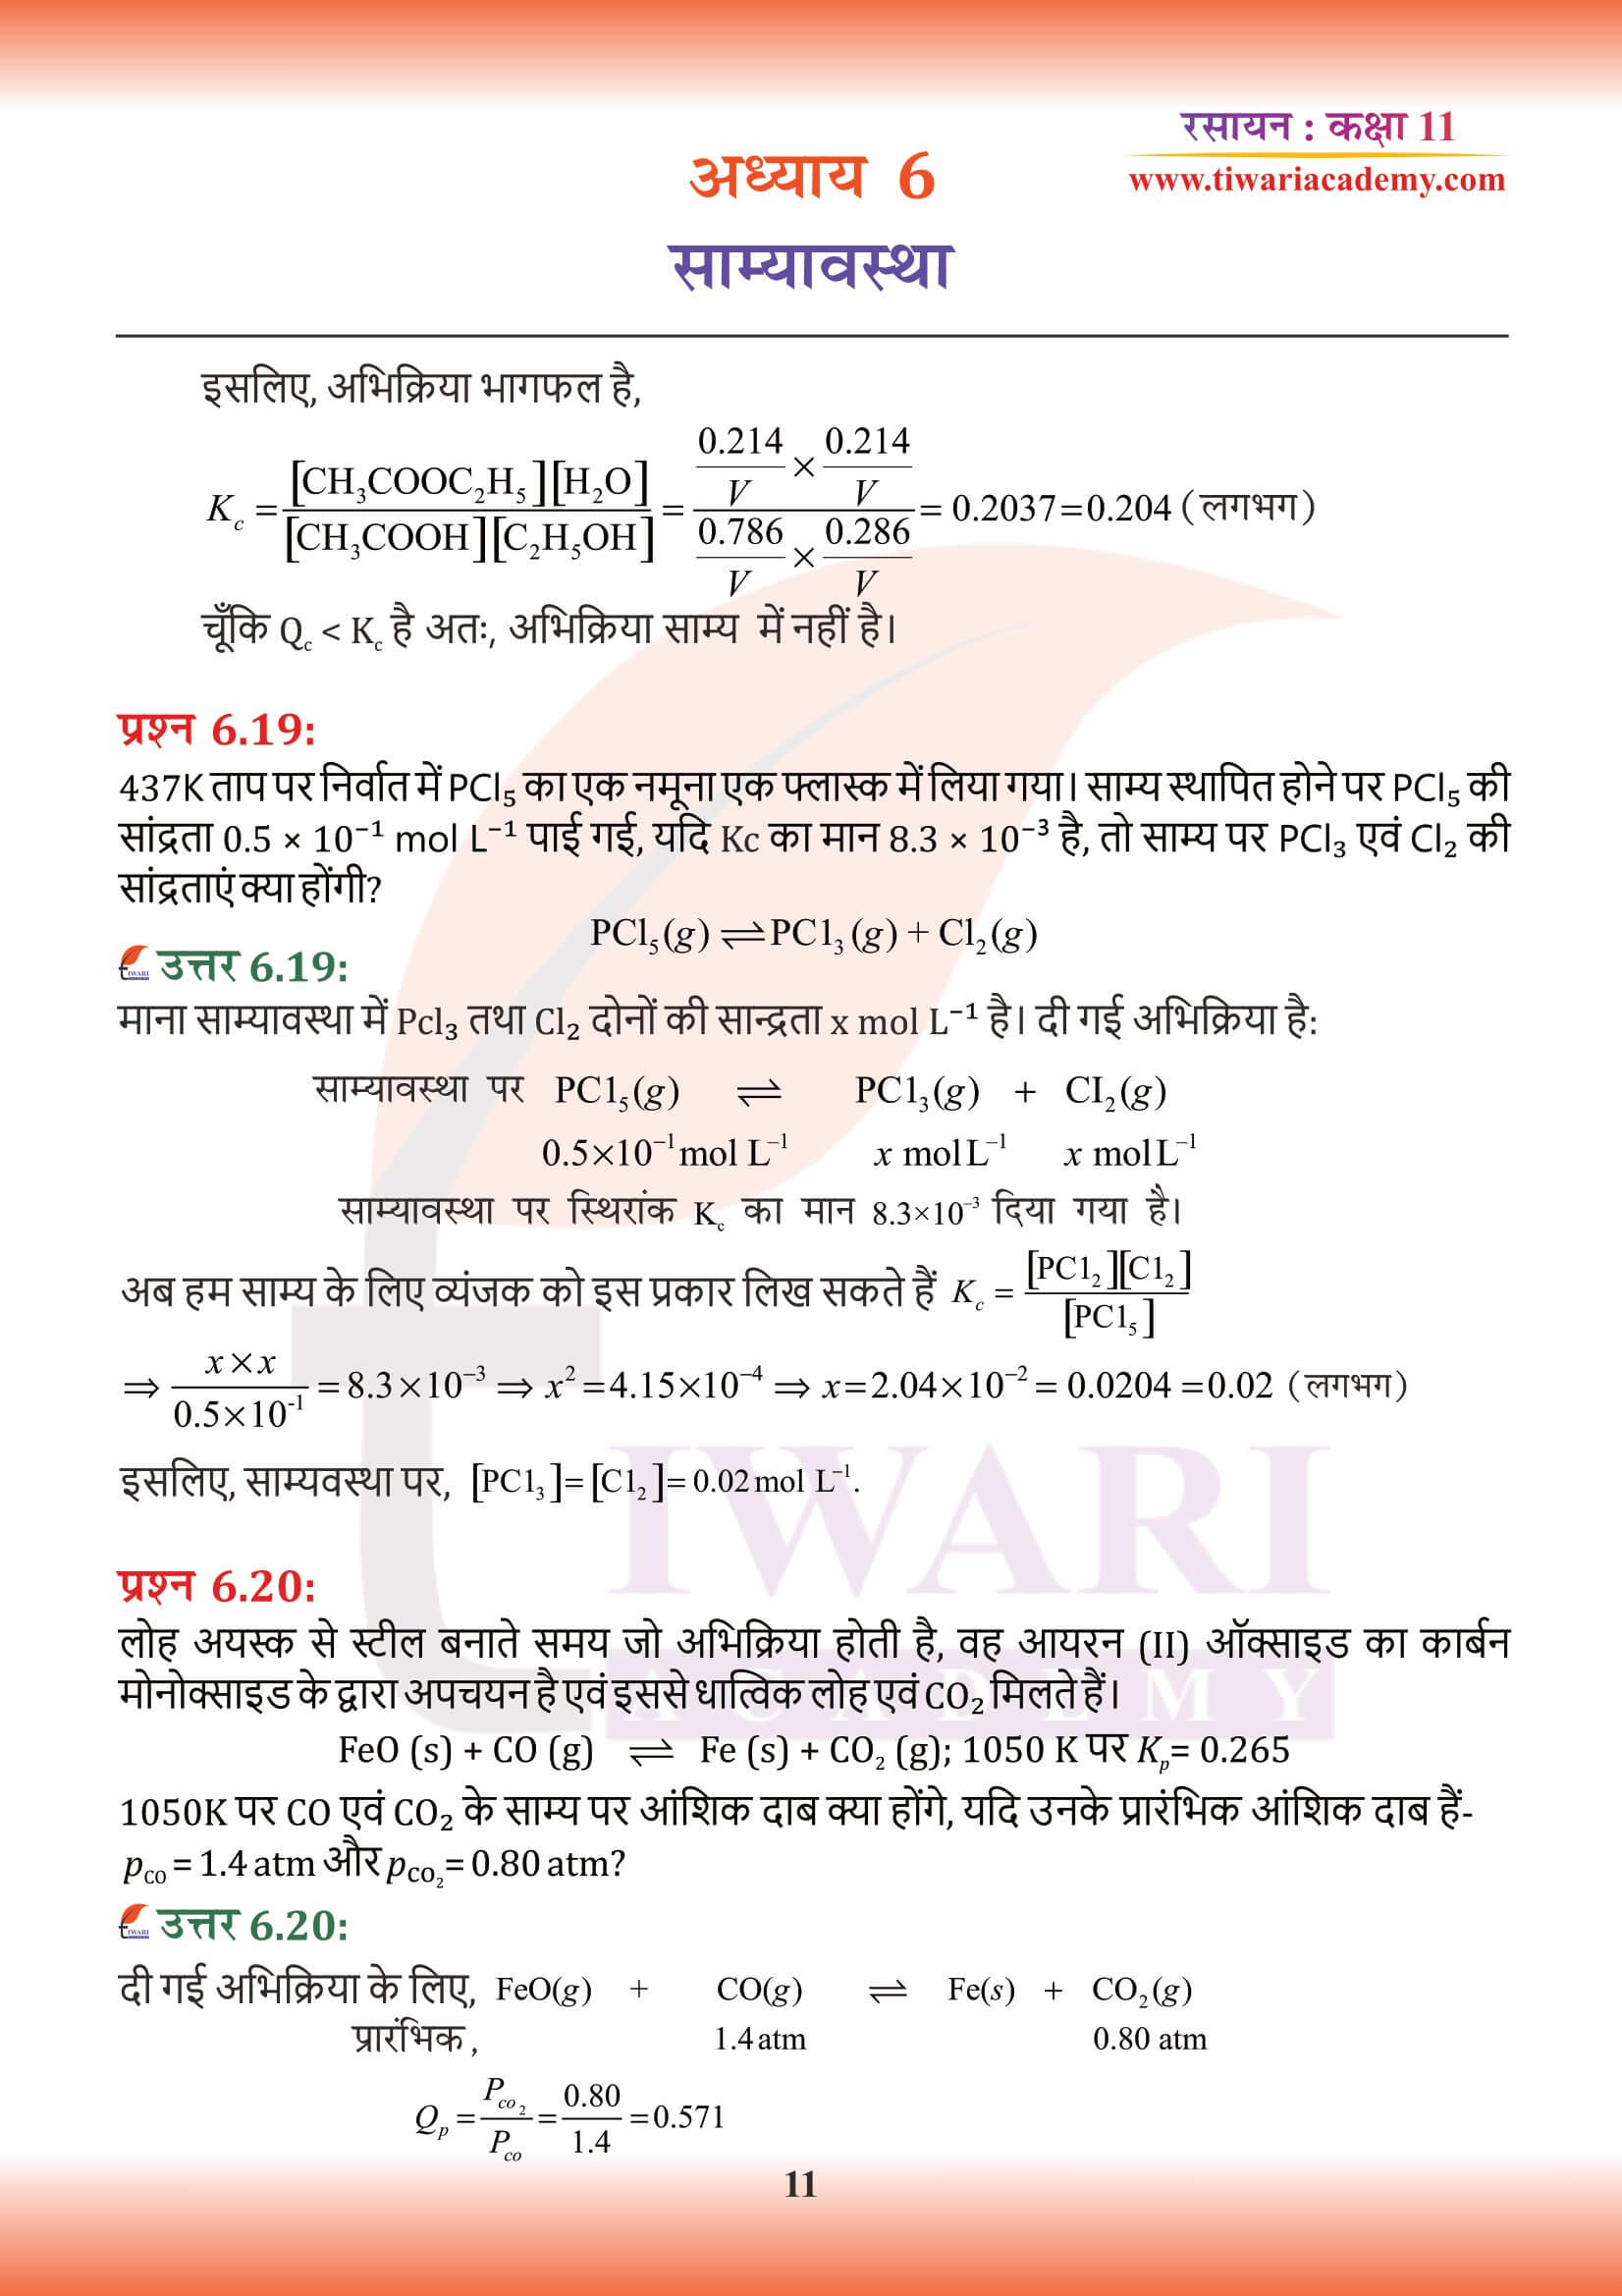 कक्षा 11 रसायन अध्याय 6 के हिंदी में हल